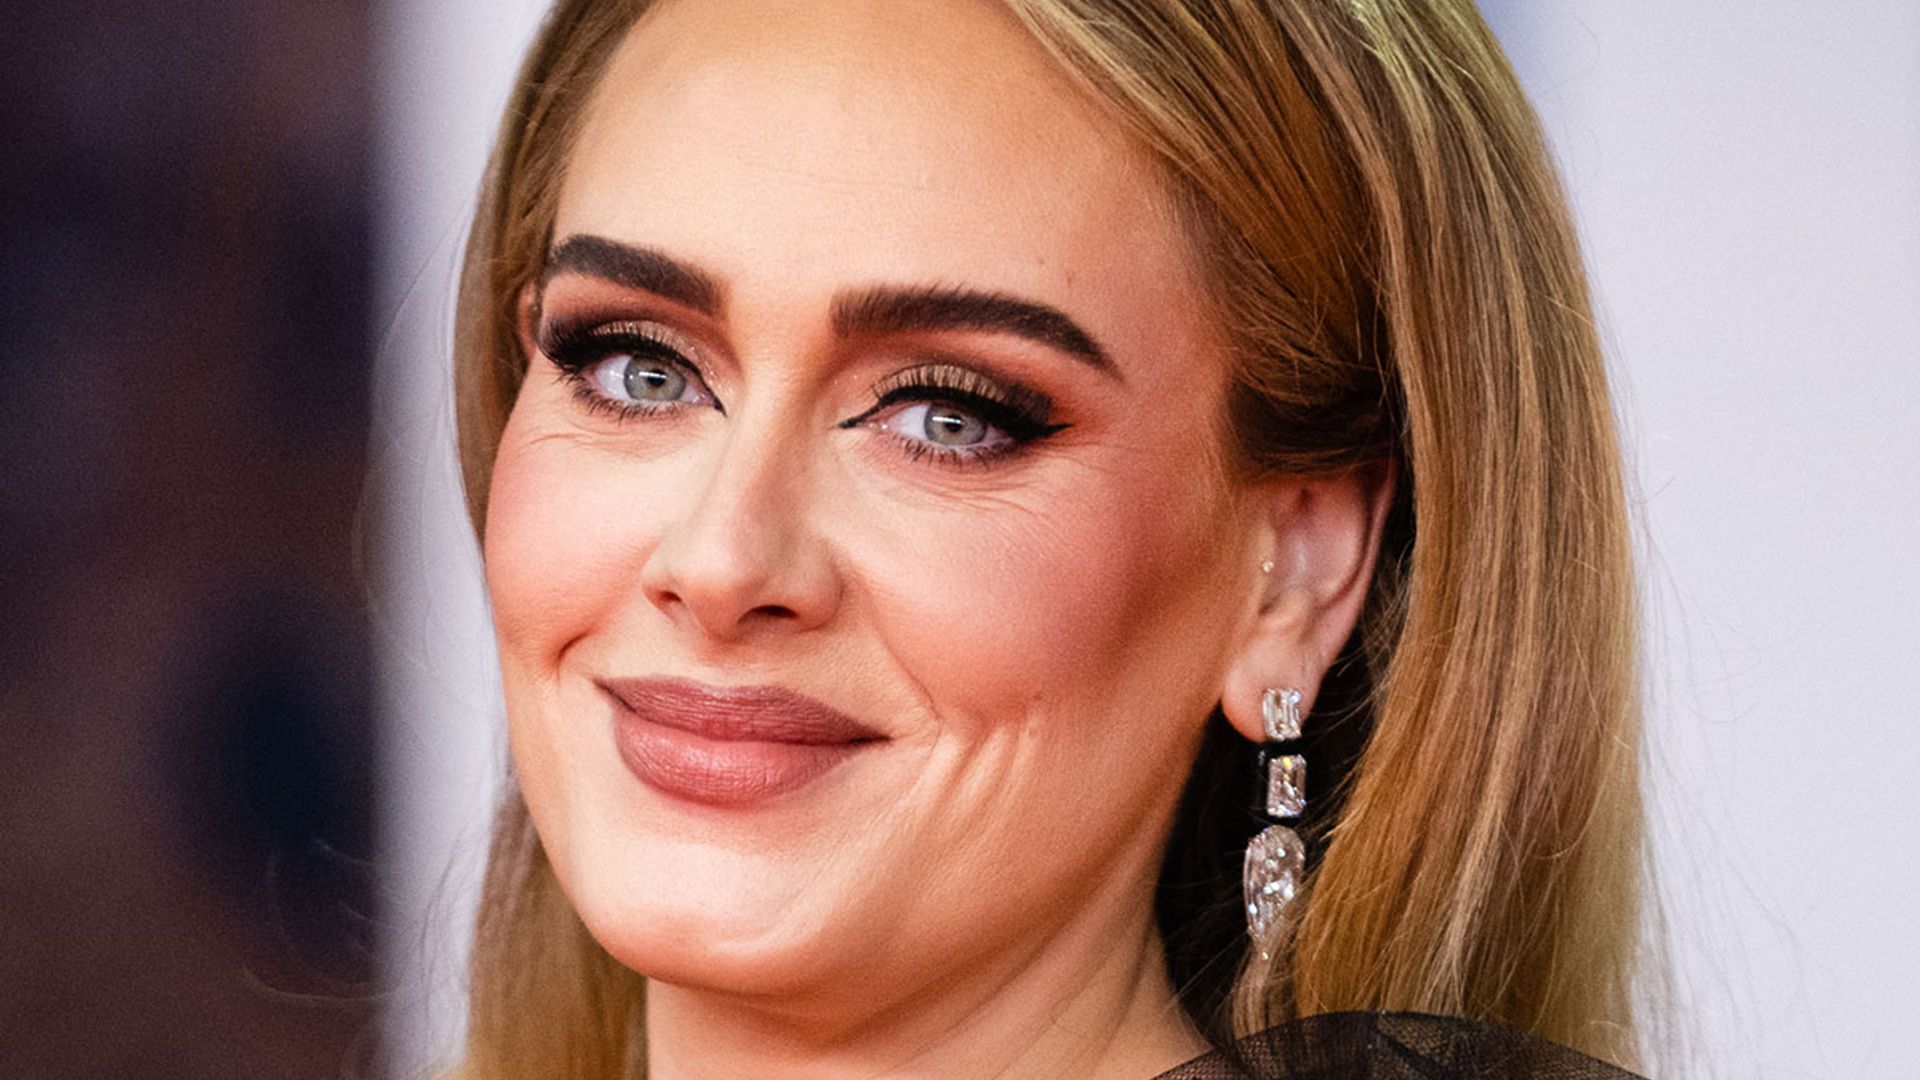 Adele stuns in figurehugging leggings as she reveals feeling 'highly